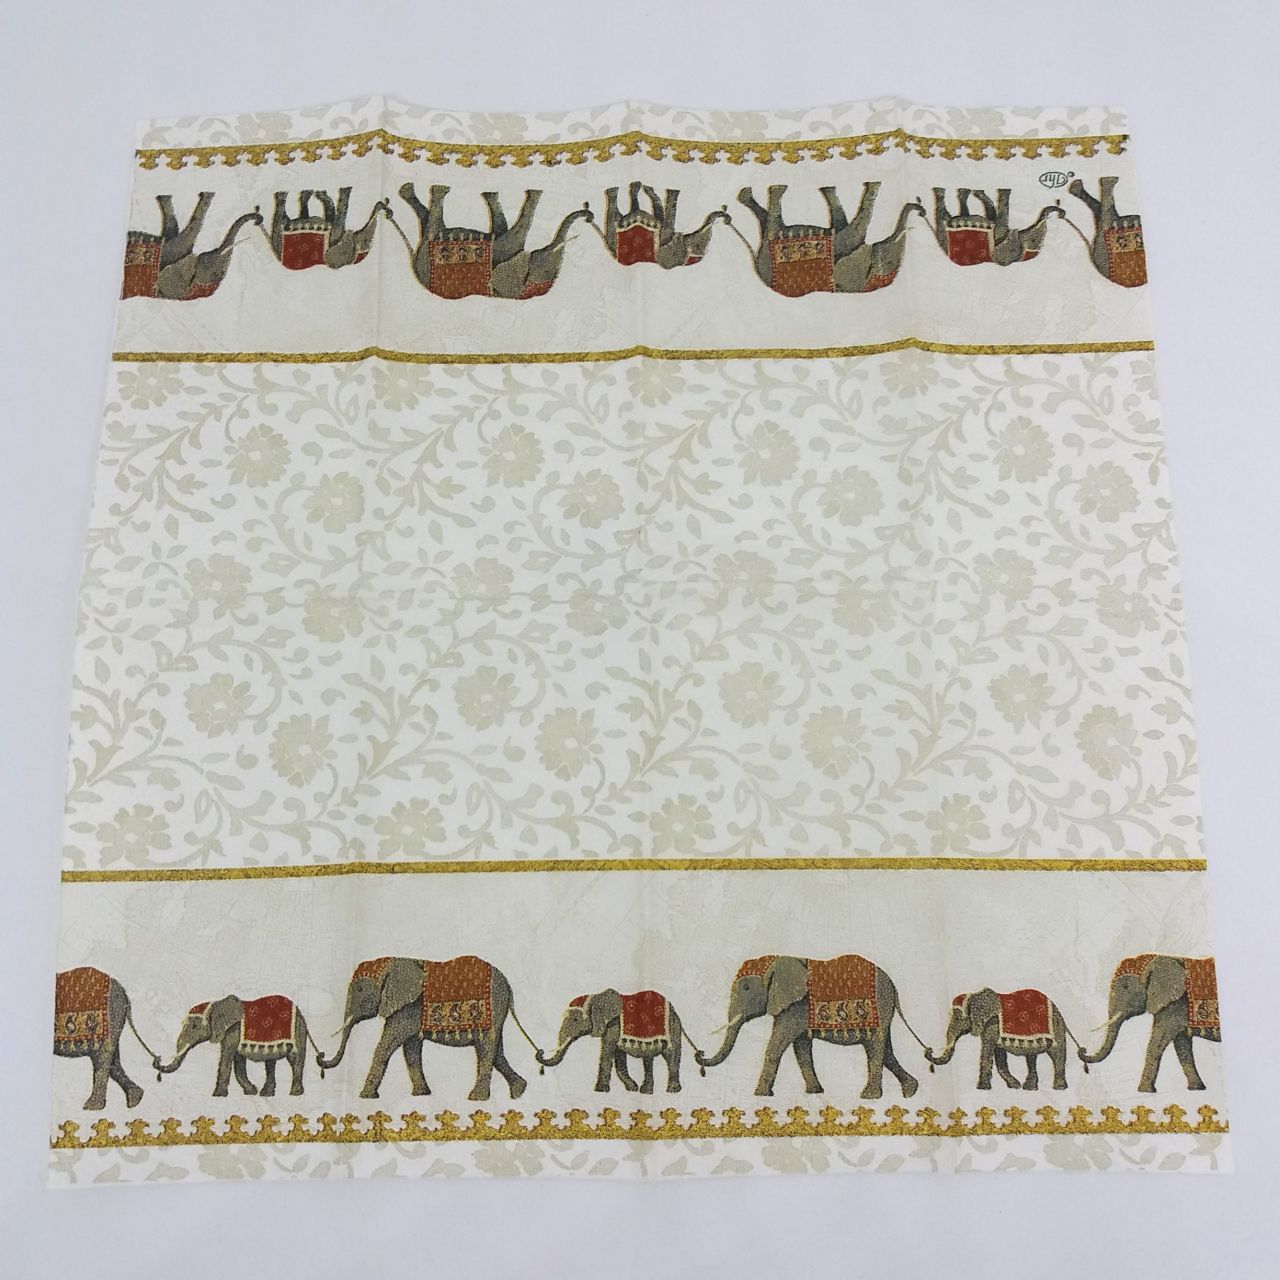 Papírzsebkendő - Elefántok sorban